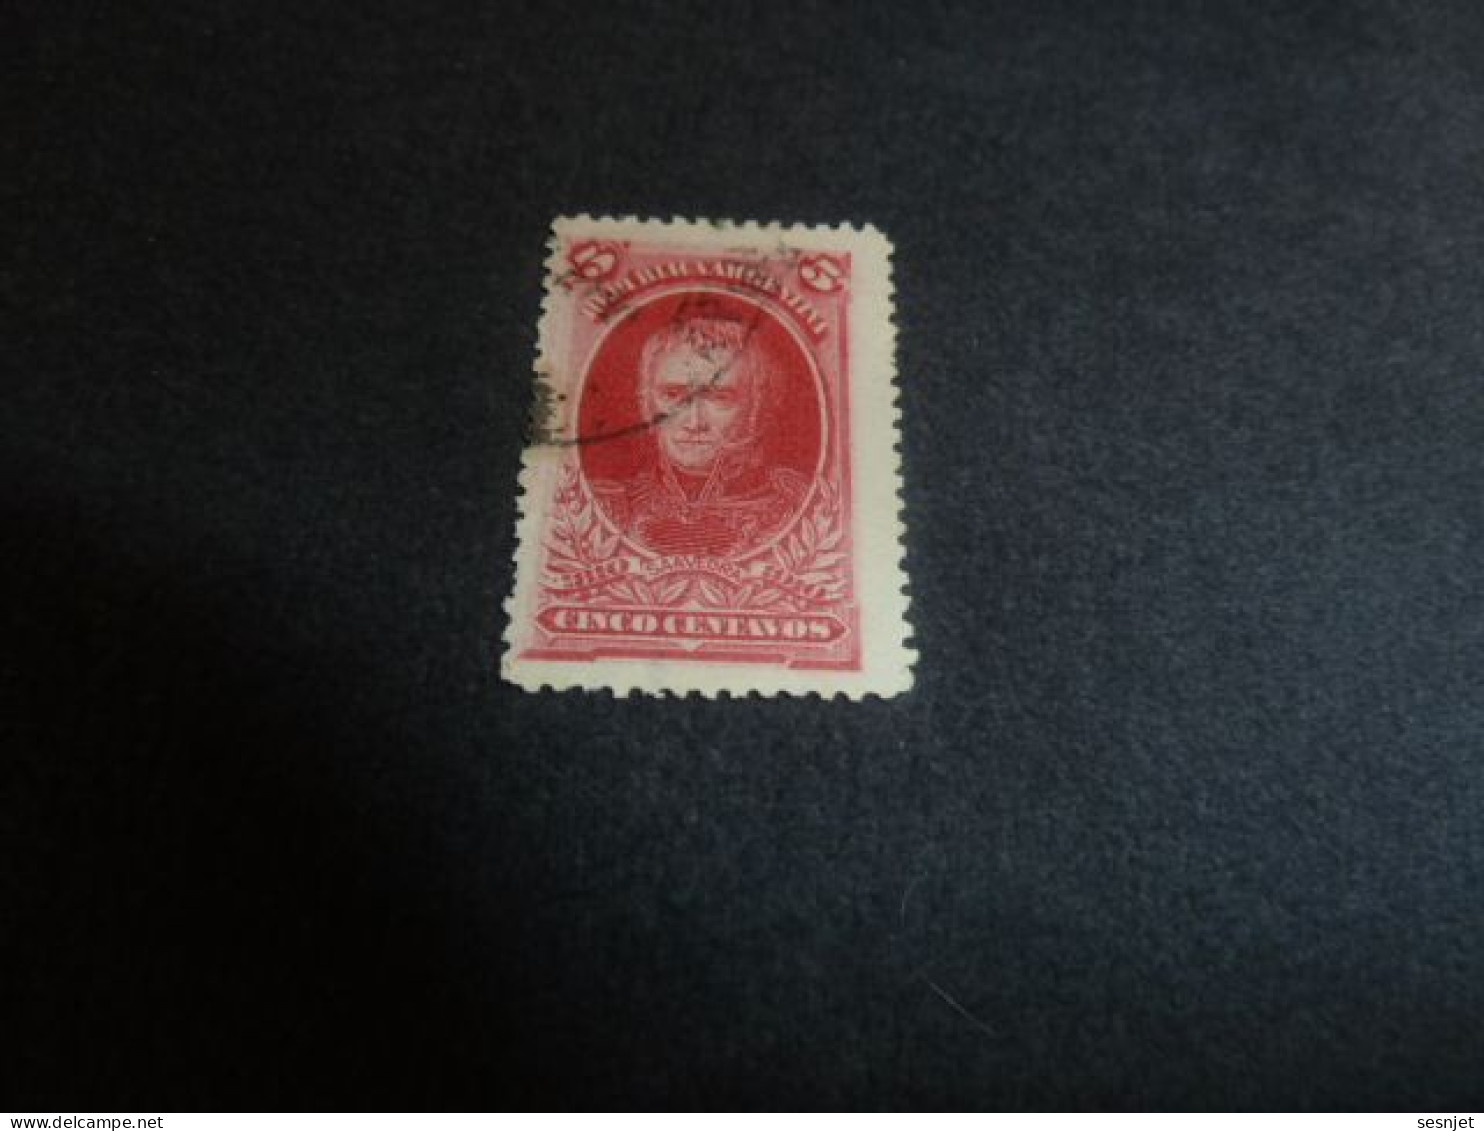 Republica Argentina - Saavedra - Cinco Centavos - Yt 153 - Rouge Carminé - Oblitéré - Année 1908 - - Used Stamps